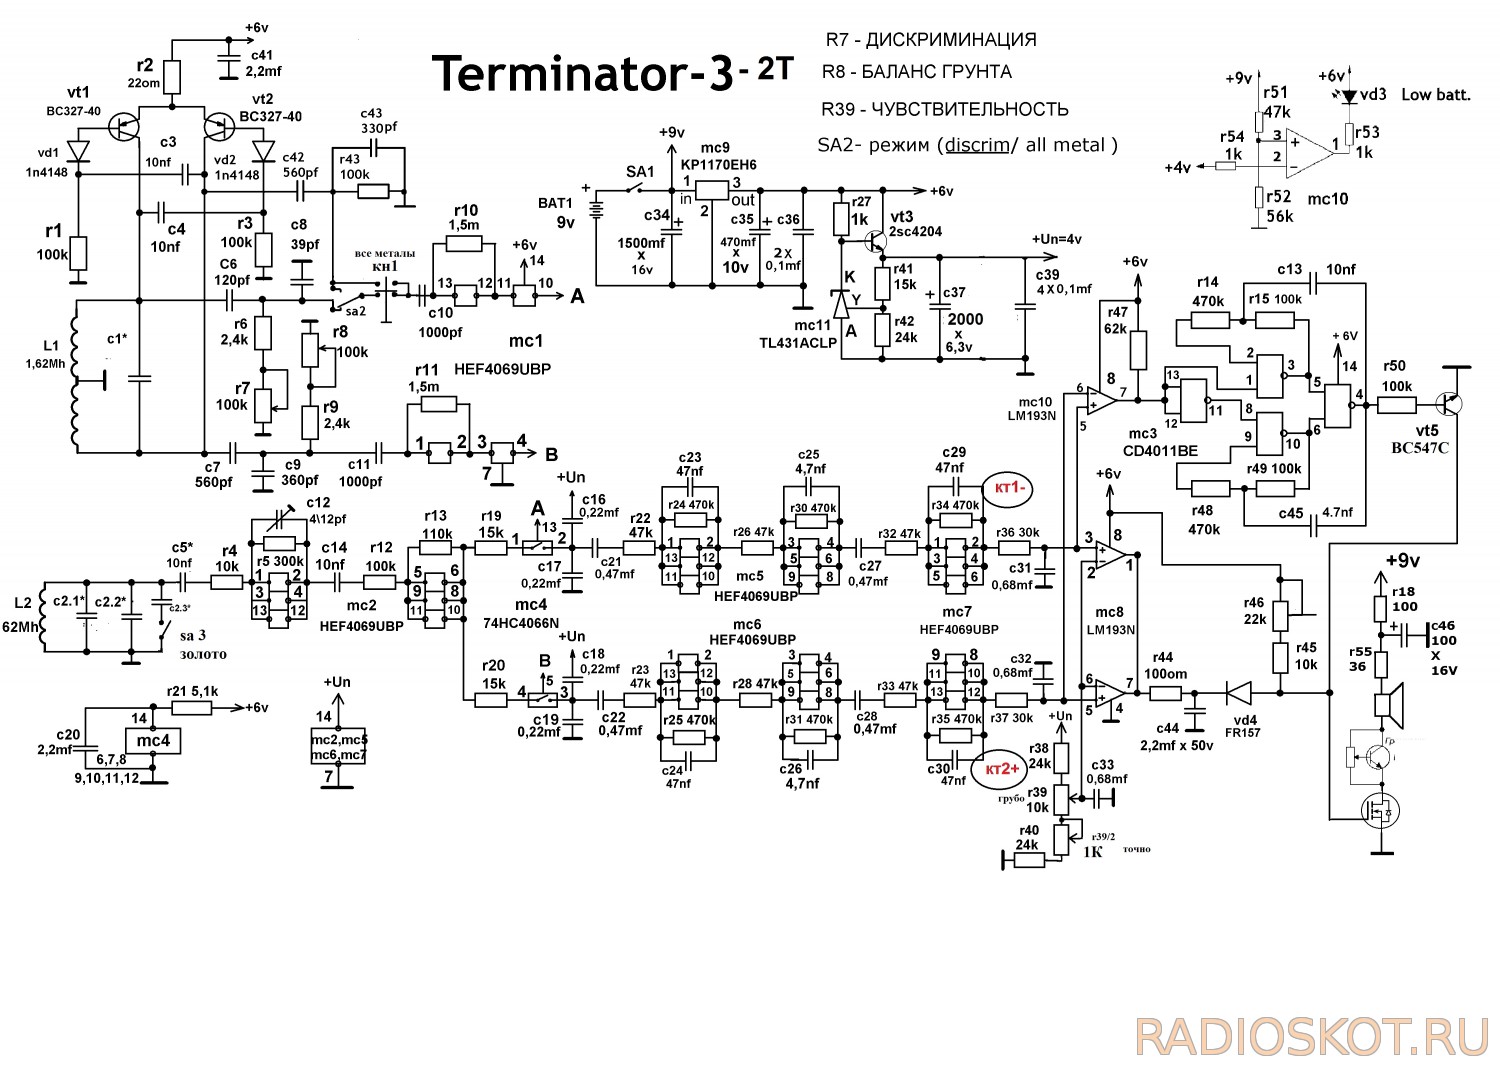 Терминатор-3 на операционных усилителях (Корчев) - Металлоискатели - Форум по радиоэлектронике